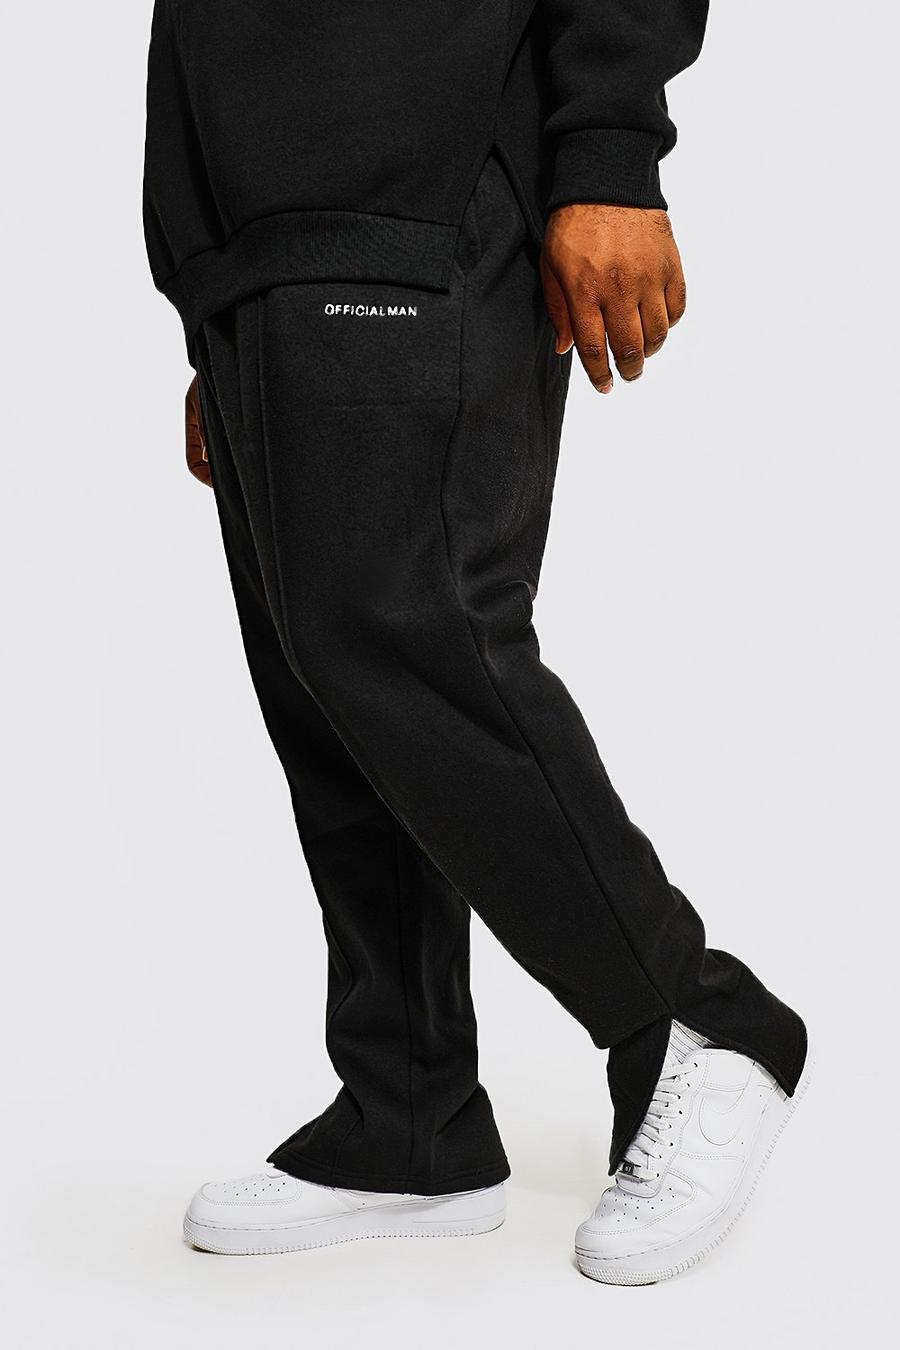 שחור מכנסי ריצה בגזרה צרה עם מכפלת חצויה וכיתוב Man Official למידות גדולות image number 1